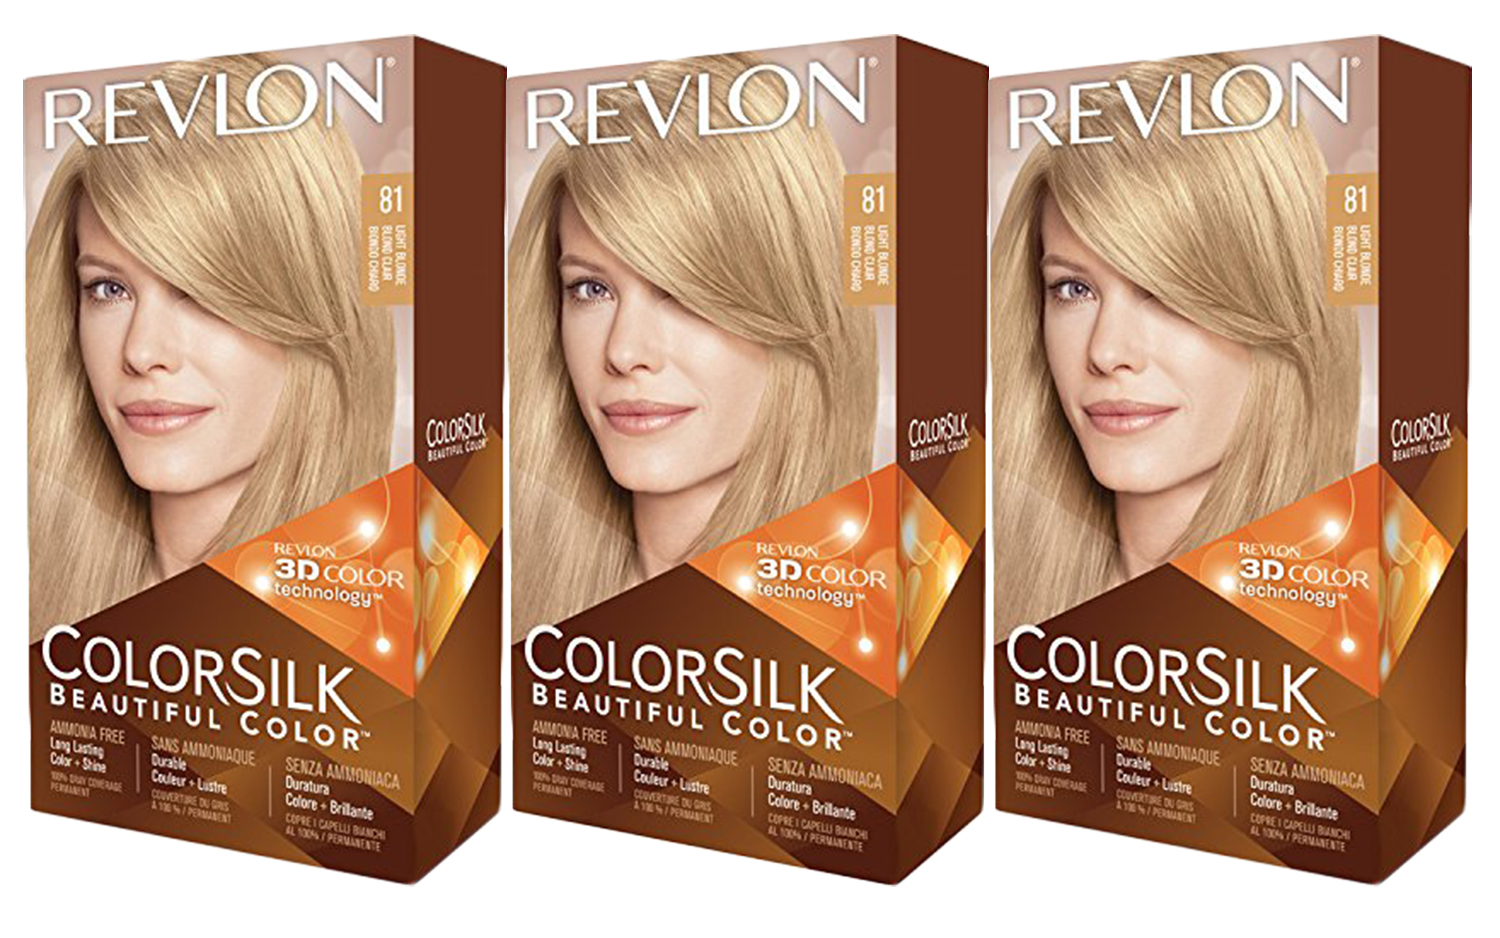 3. Revlon ColorSilk Beautiful Color Hair Color - wide 1